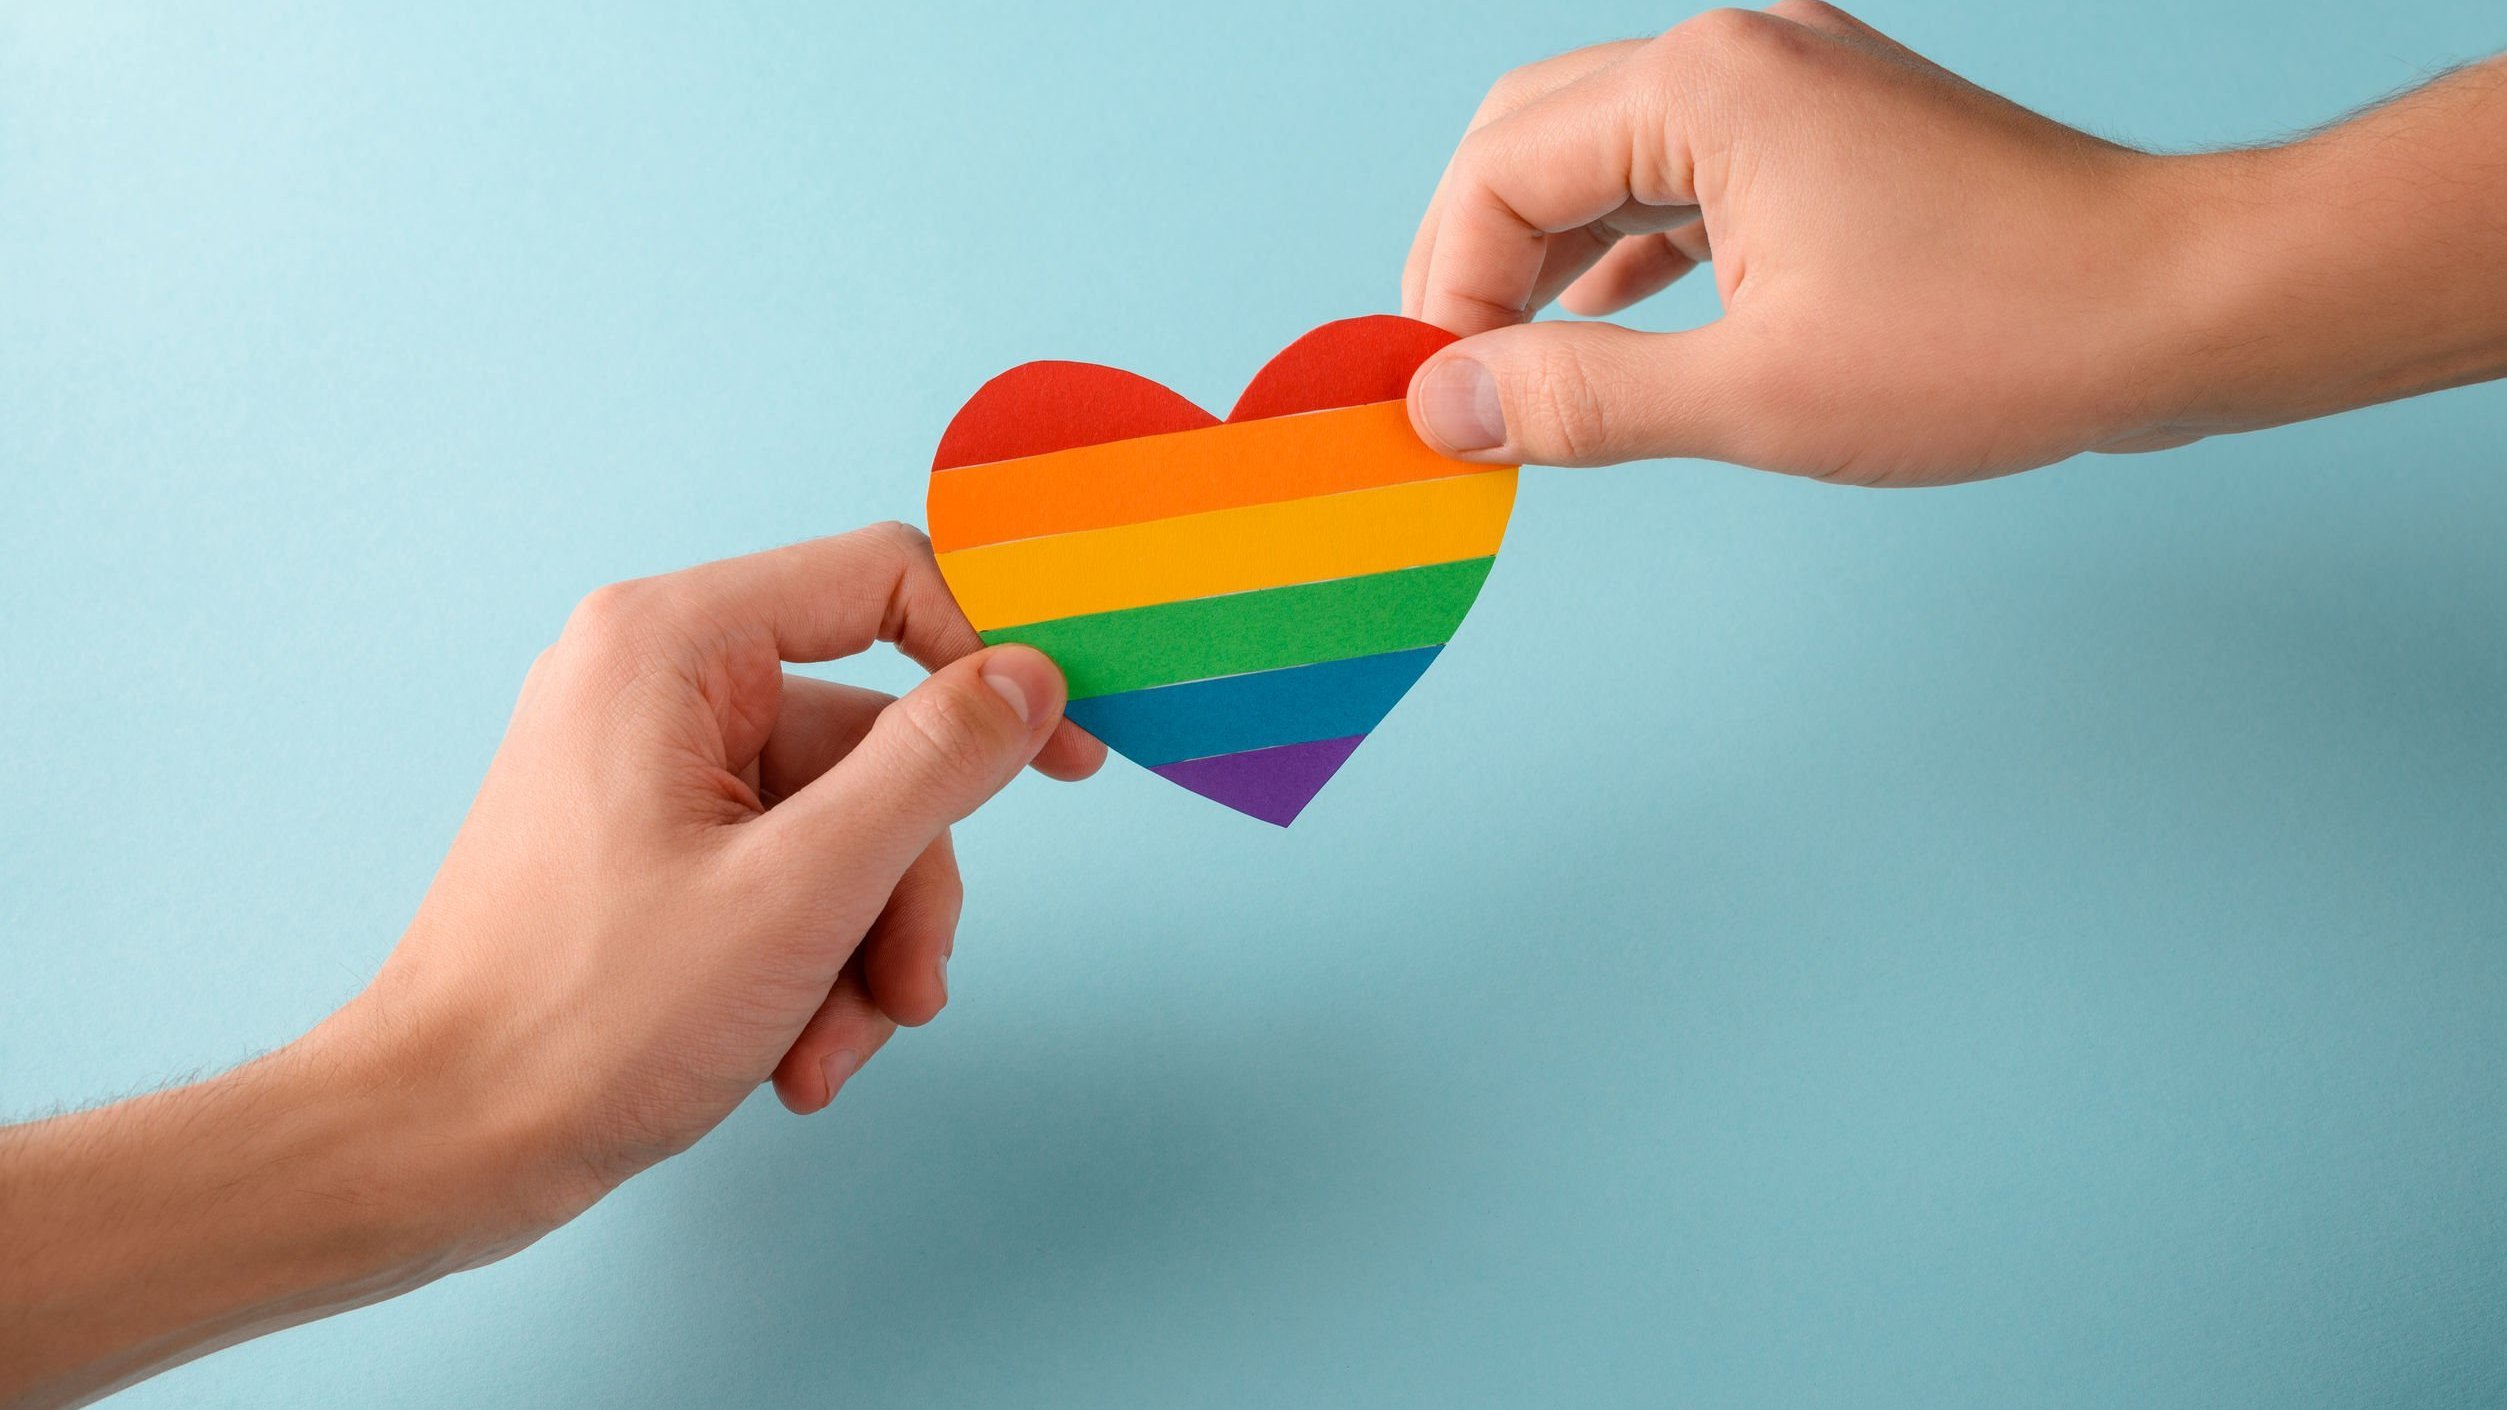 Mãos seguram coração colorido com cores representativas do movimento LGBT.